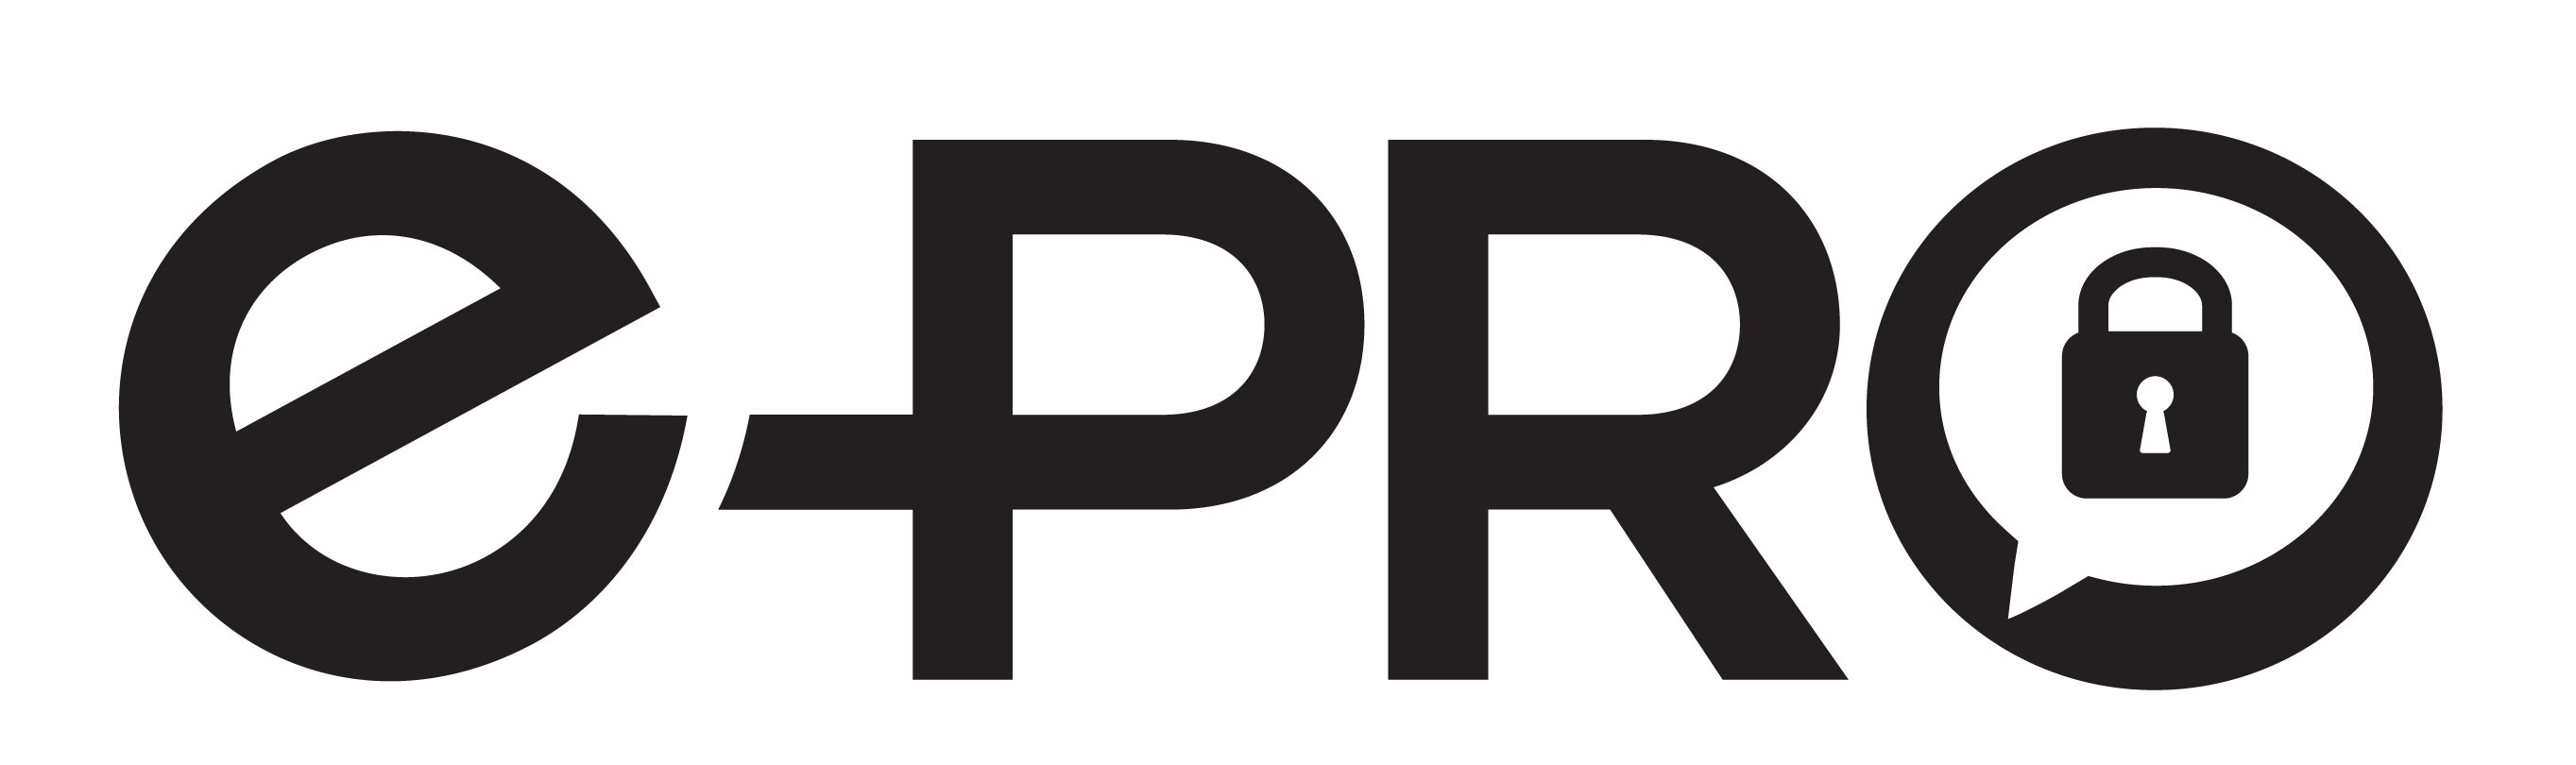 ePro certification logo